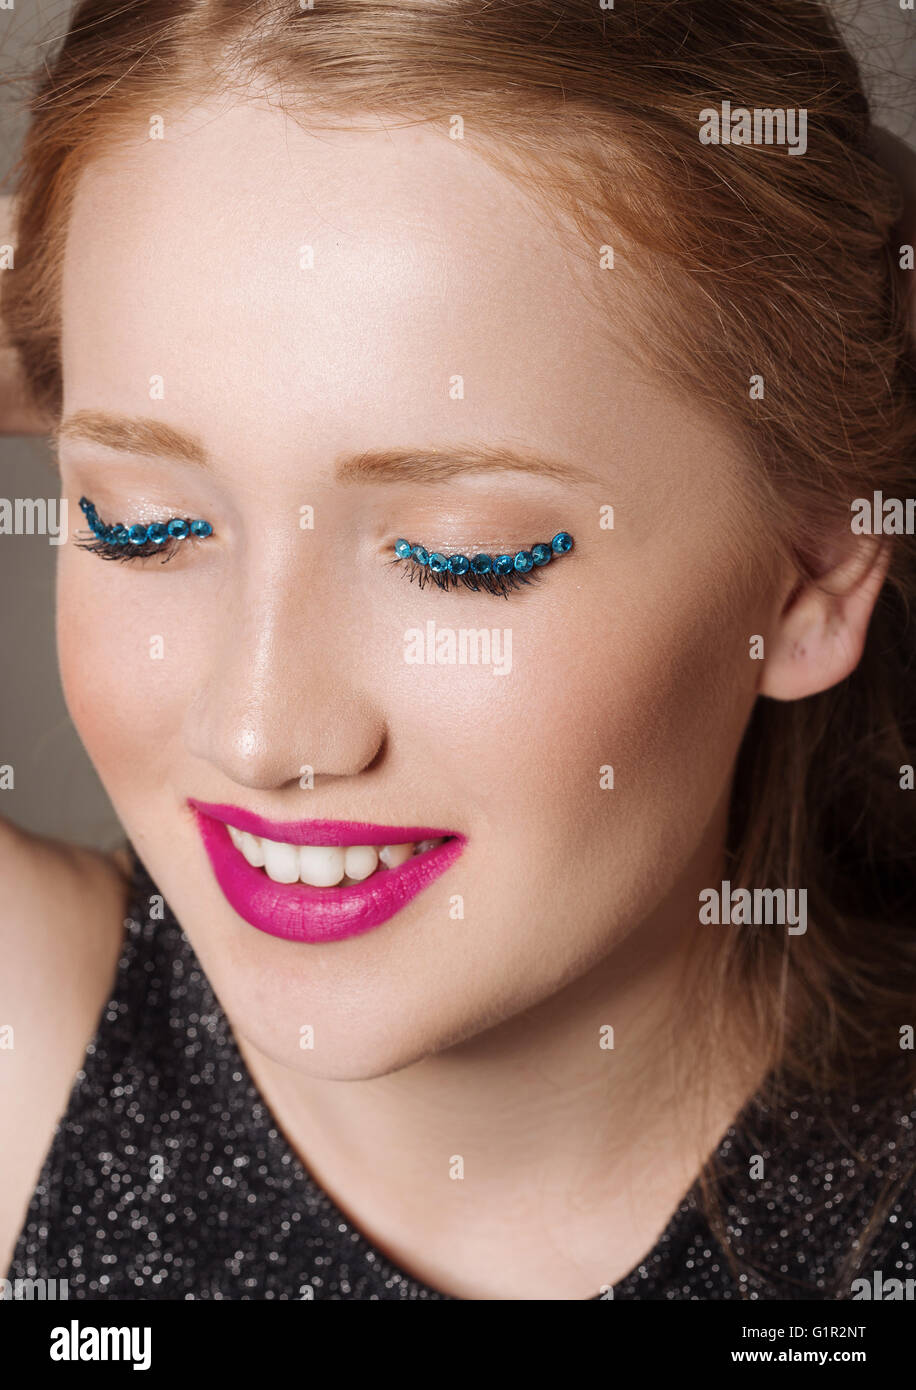 Ritratto di una giovane donna in studio con glittery trucco sorridente Foto Stock